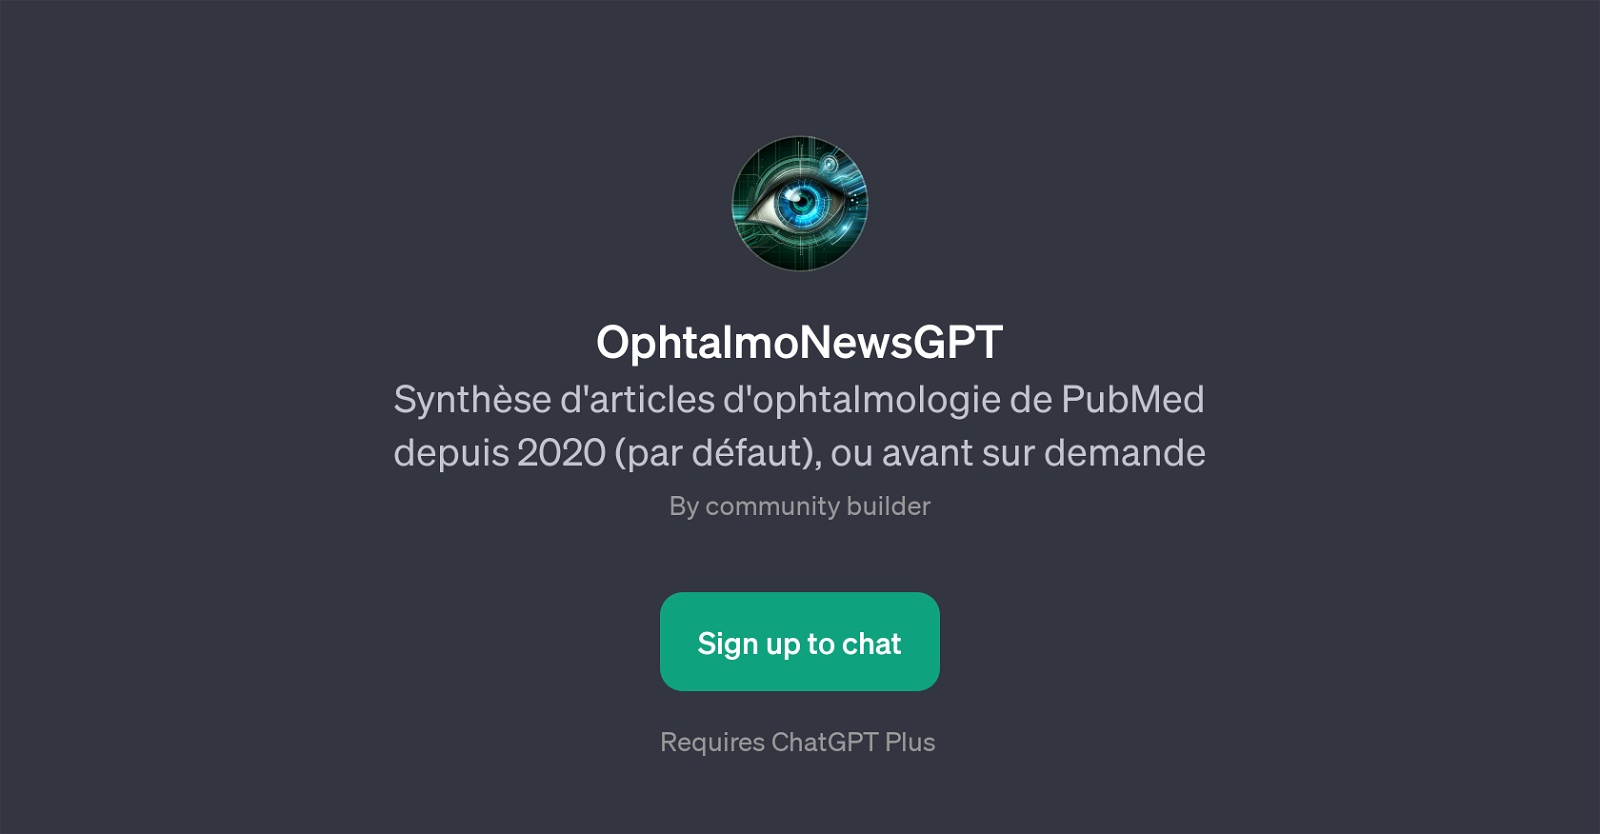 OphtalmoNewsGPT website